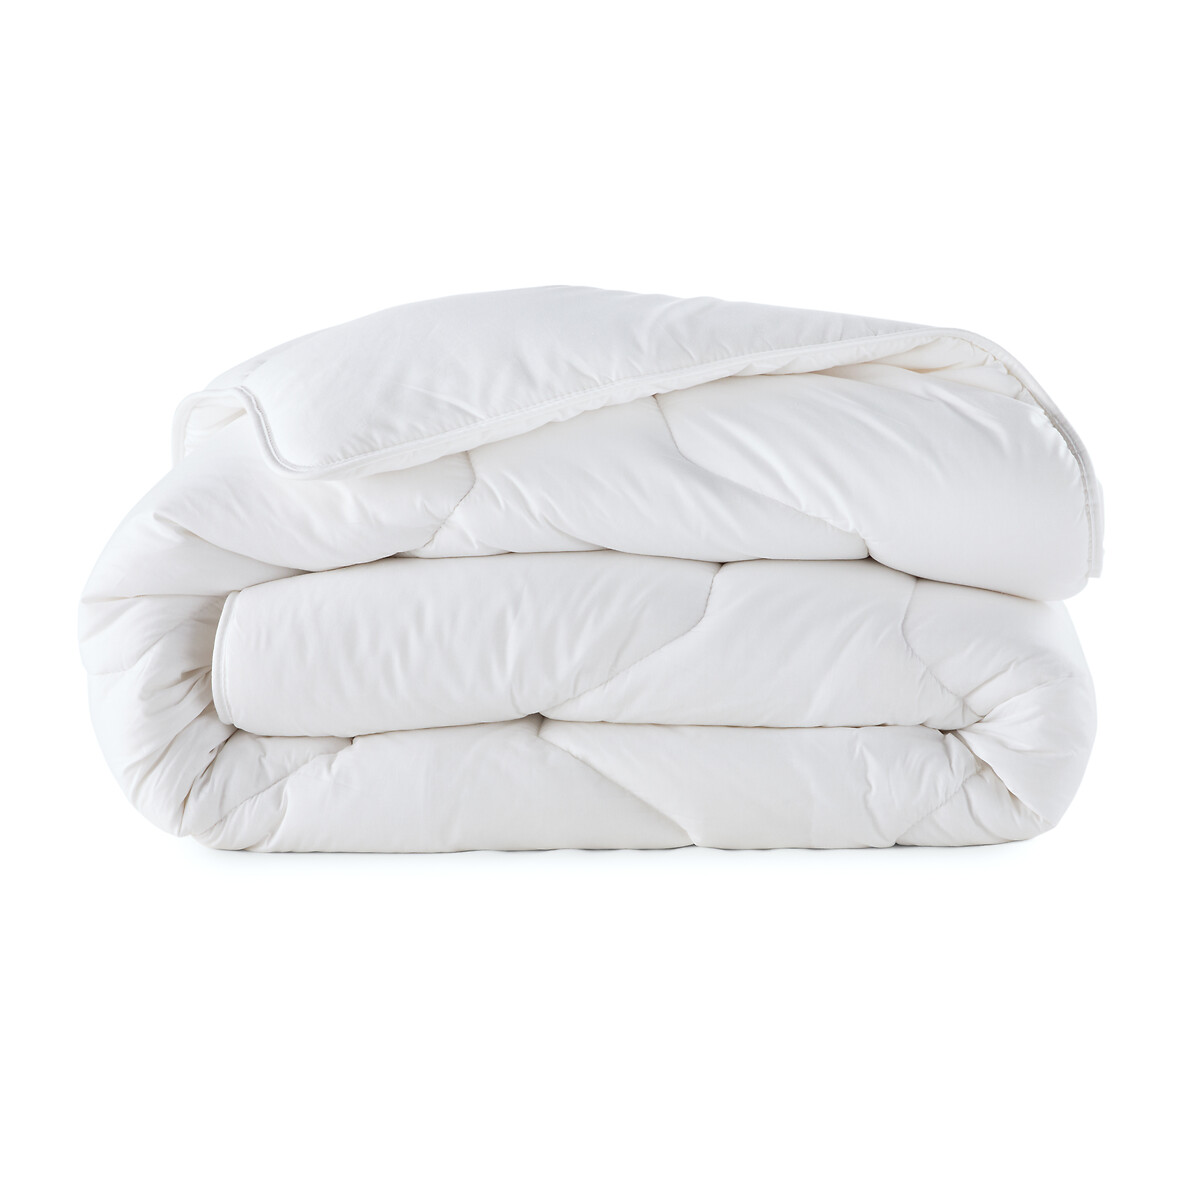 Одеяло La Redoute Синтетическое высокого качества 260 x 240 см белый, размер 260 x 240 см - фото 2